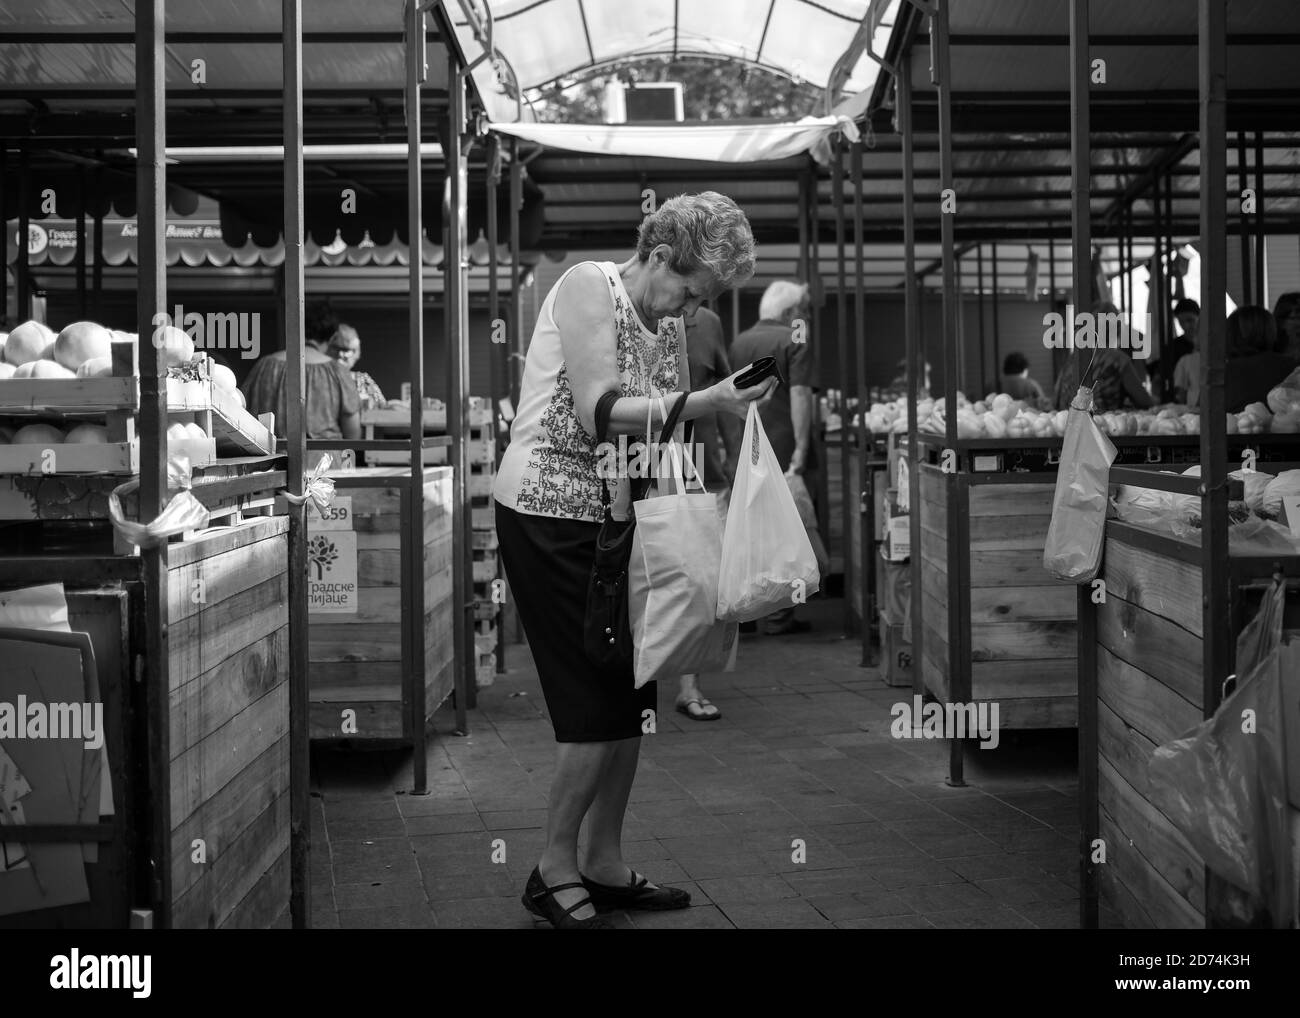 Belgrade, Serbie, 12 septembre 2019 : femme avec des sacs au marché vert (N/B) Banque D'Images